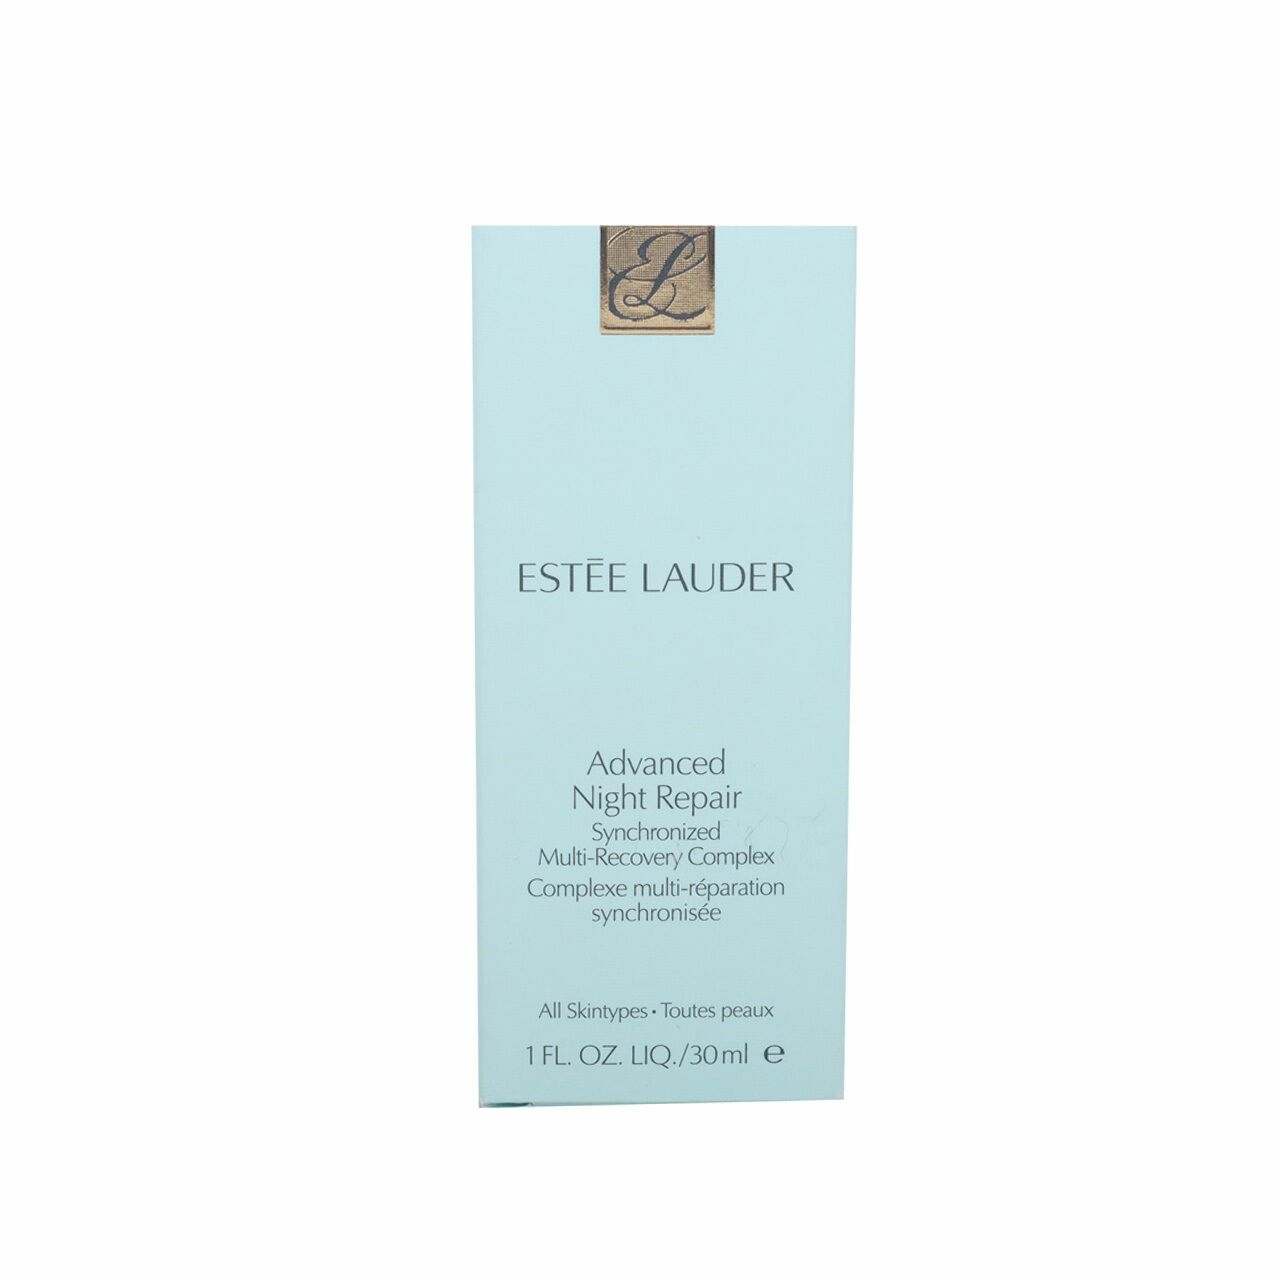 Estee Lauder Lauder Advanced Night Repair Skin Care